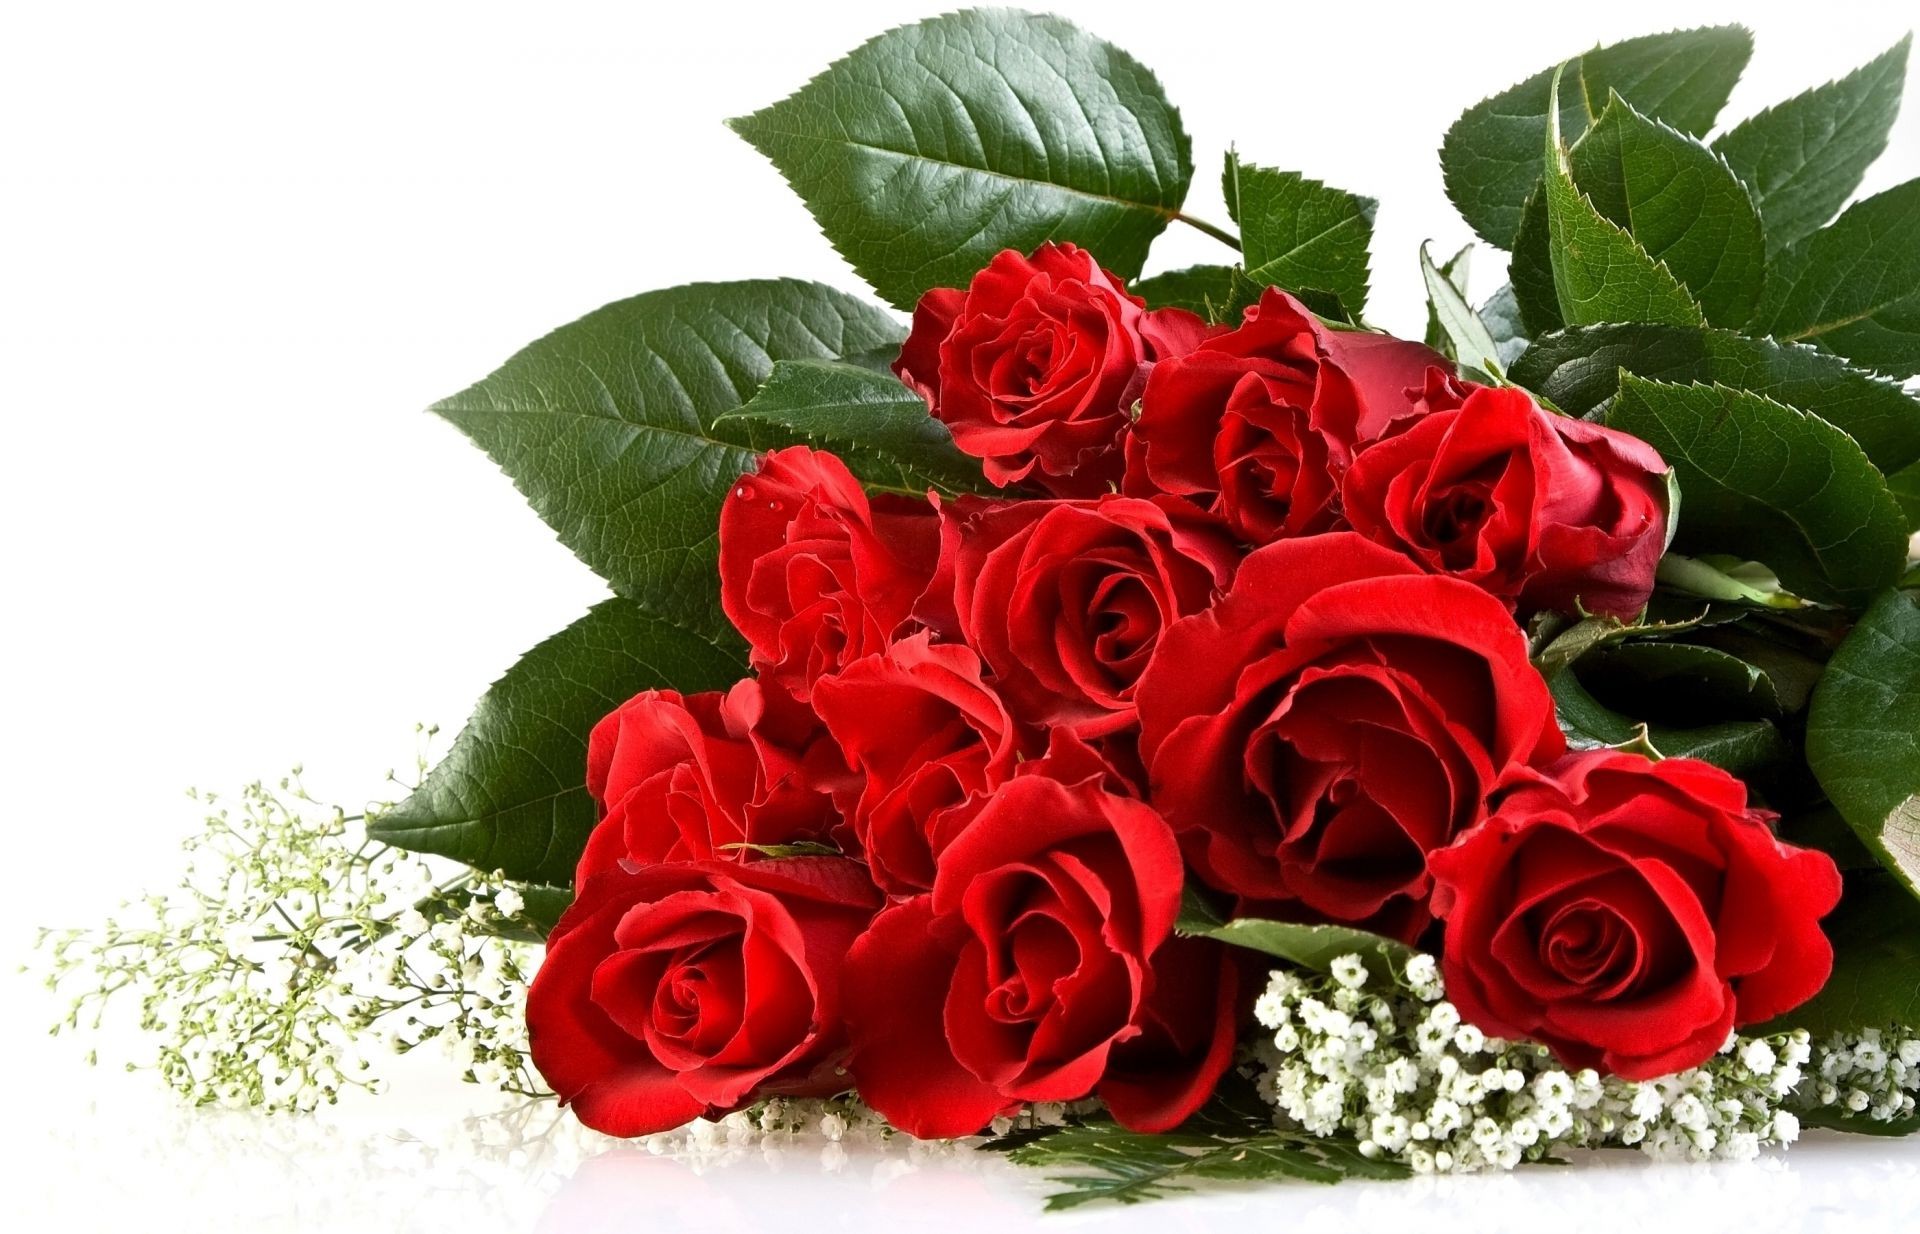 букет цветов роза романтика любовь букет лепесток цветок цветочные подарок романтический лист блюминг свадьба украшения кластер юбилей флора природа праздник дружище брак